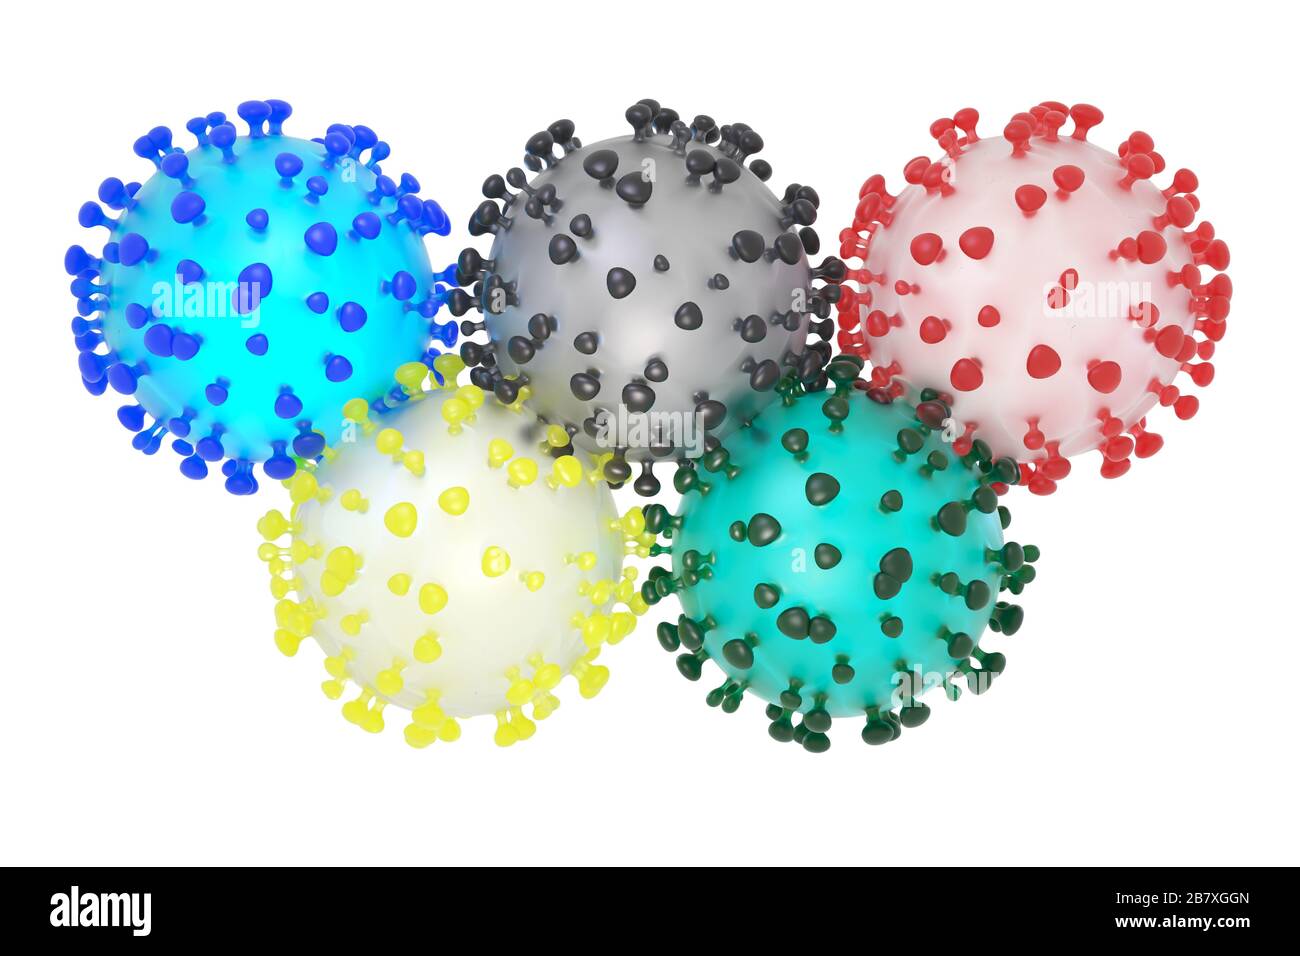 Symbolische 3D-Darstellung des Coronavirus sars-COV-2 und der olympischen Ringe Stockfoto